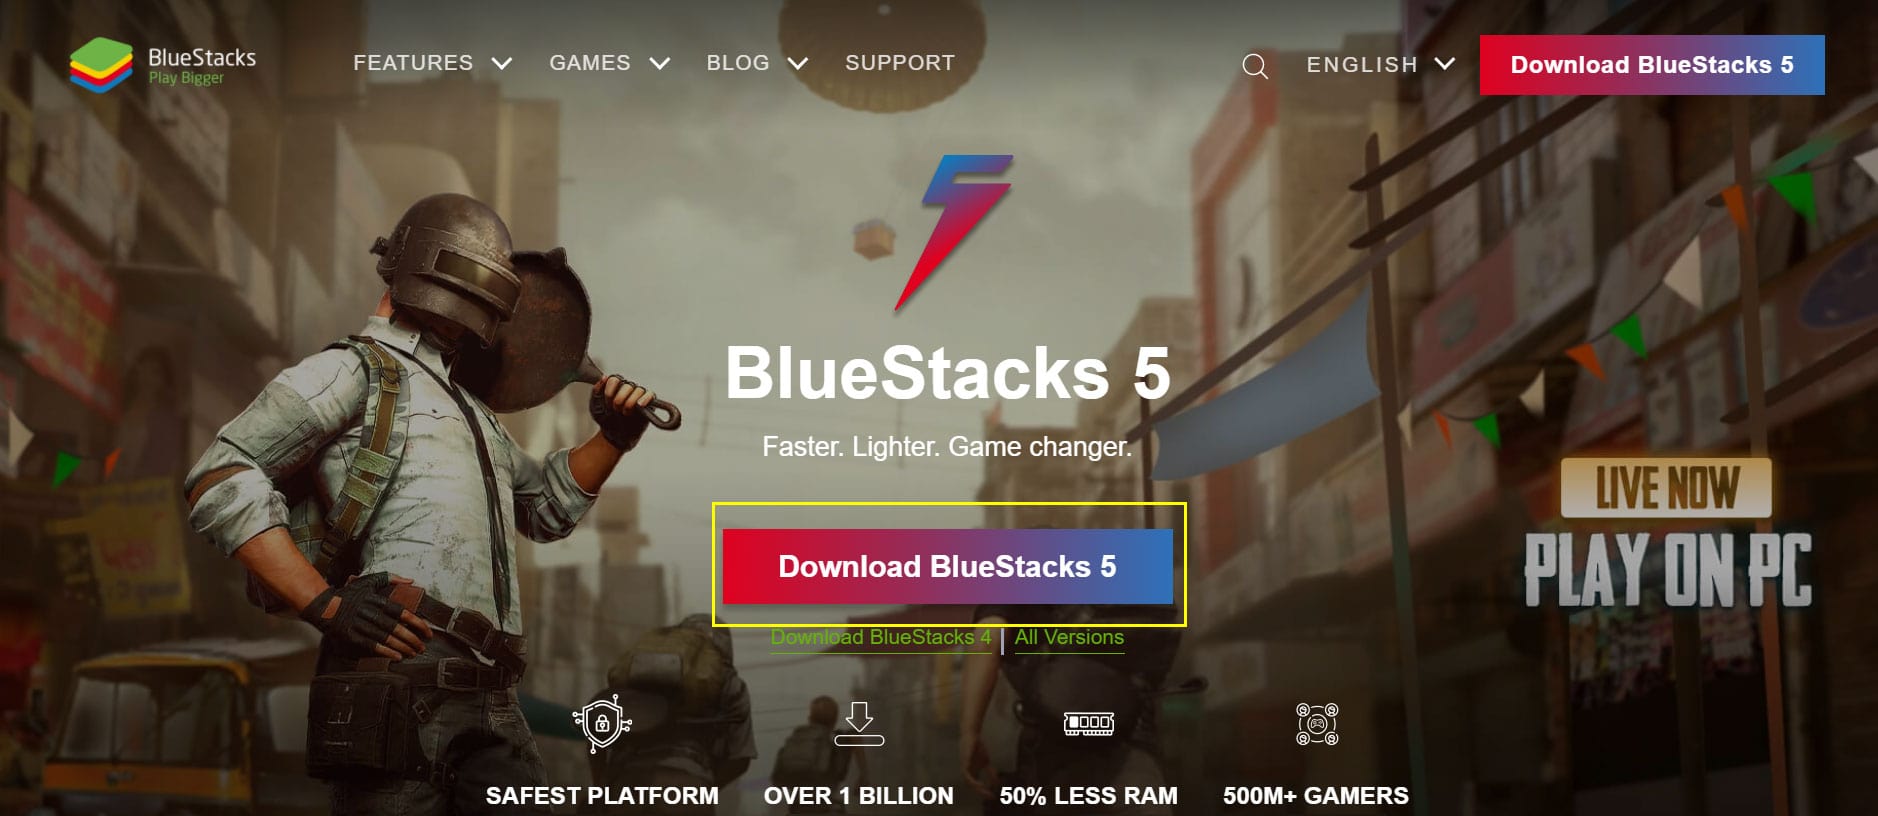 bluestacks installer latest versions already installed